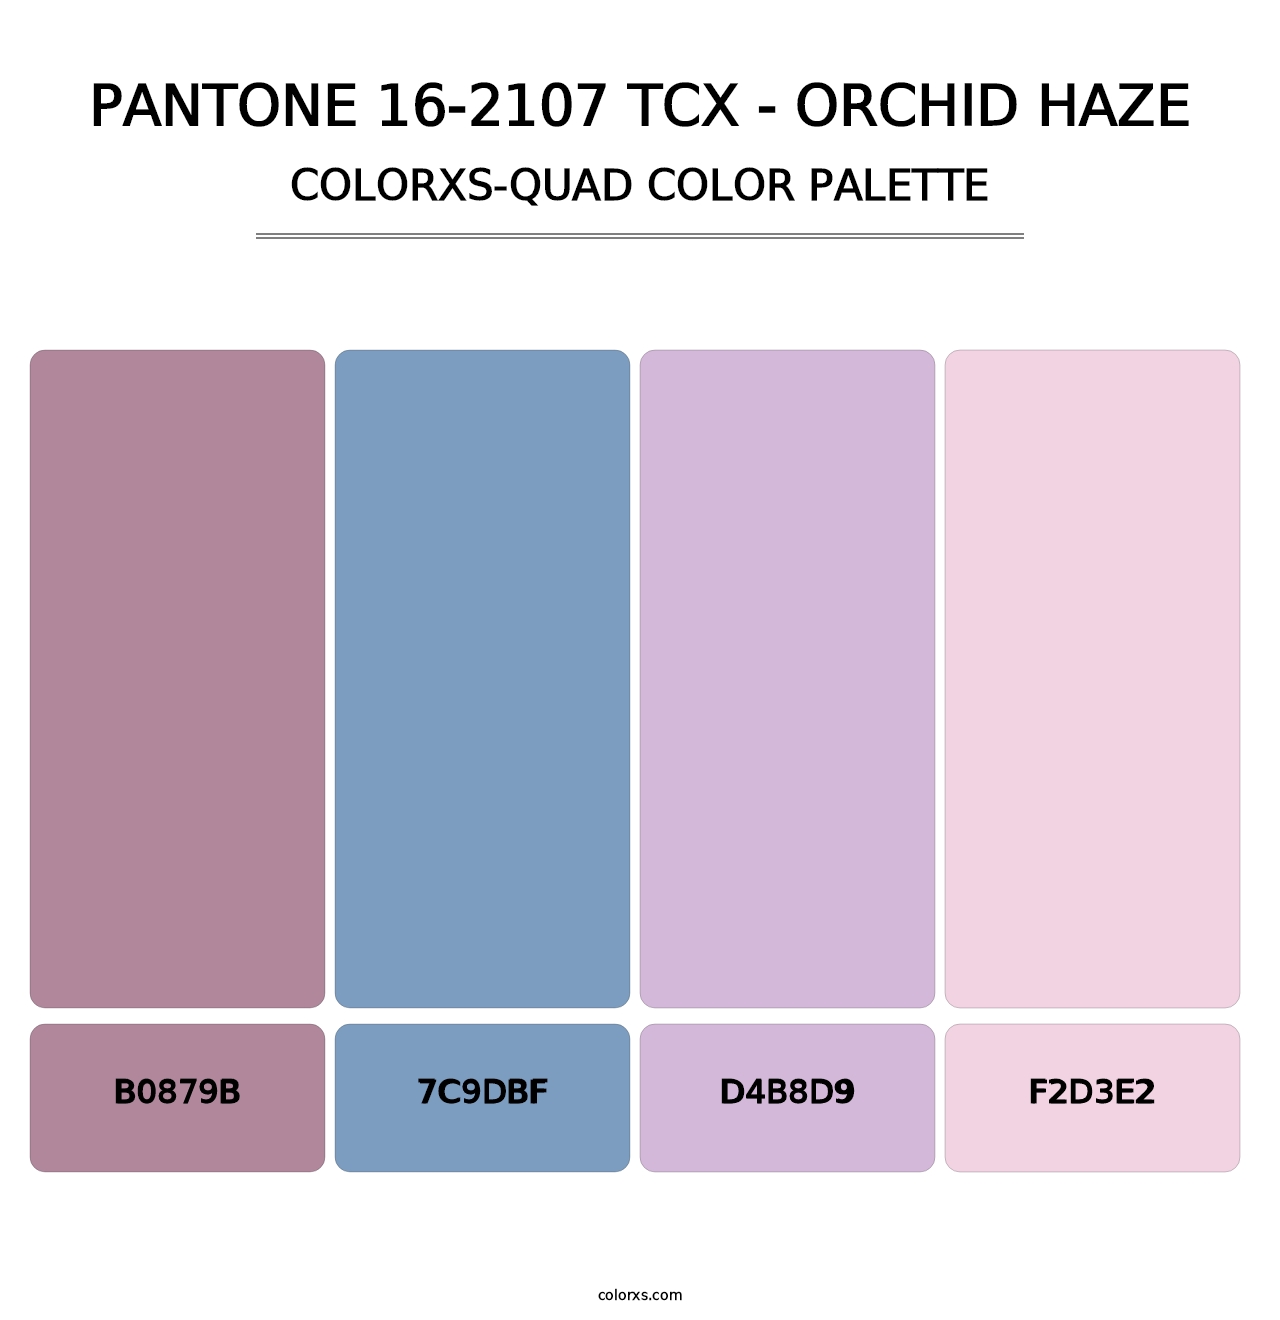 PANTONE 16-2107 TCX - Orchid Haze - Colorxs Quad Palette